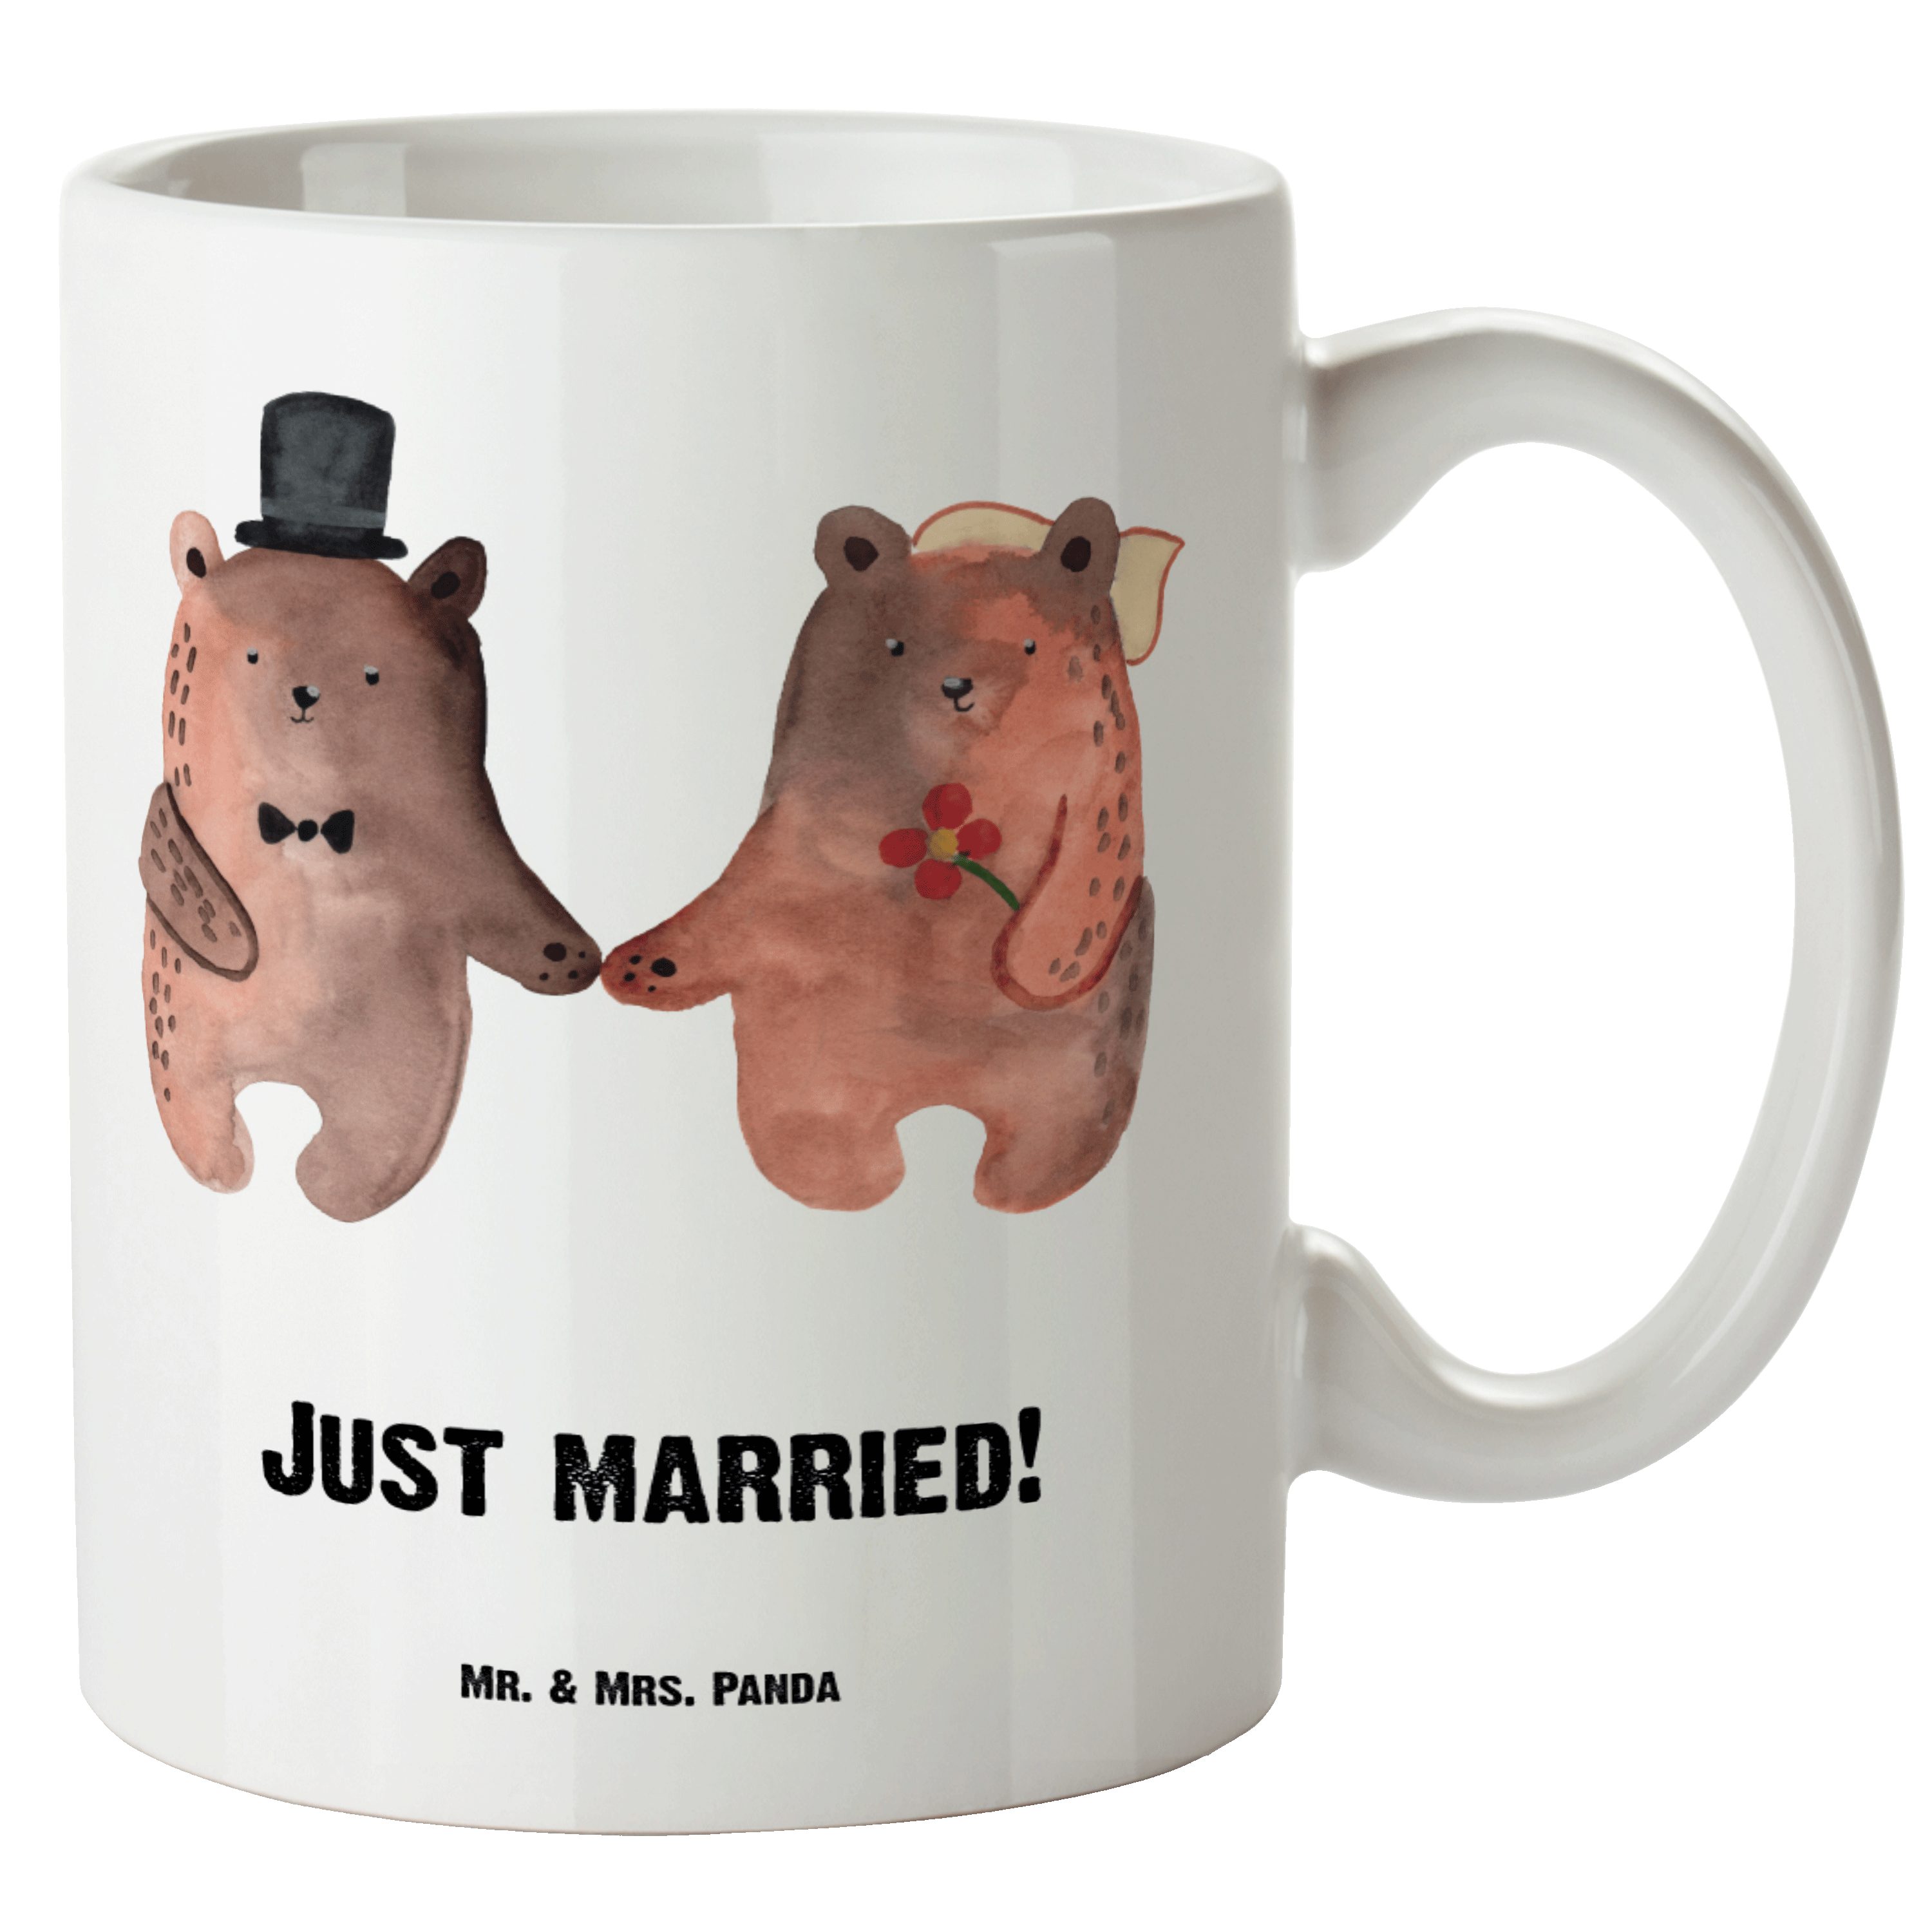 Mr. & Mrs. Panda Tasse Bär Heirat - Weiß - Geschenk, Teddy, Teddybär, Bär Verheiratet Heirat, XL Tasse Keramik